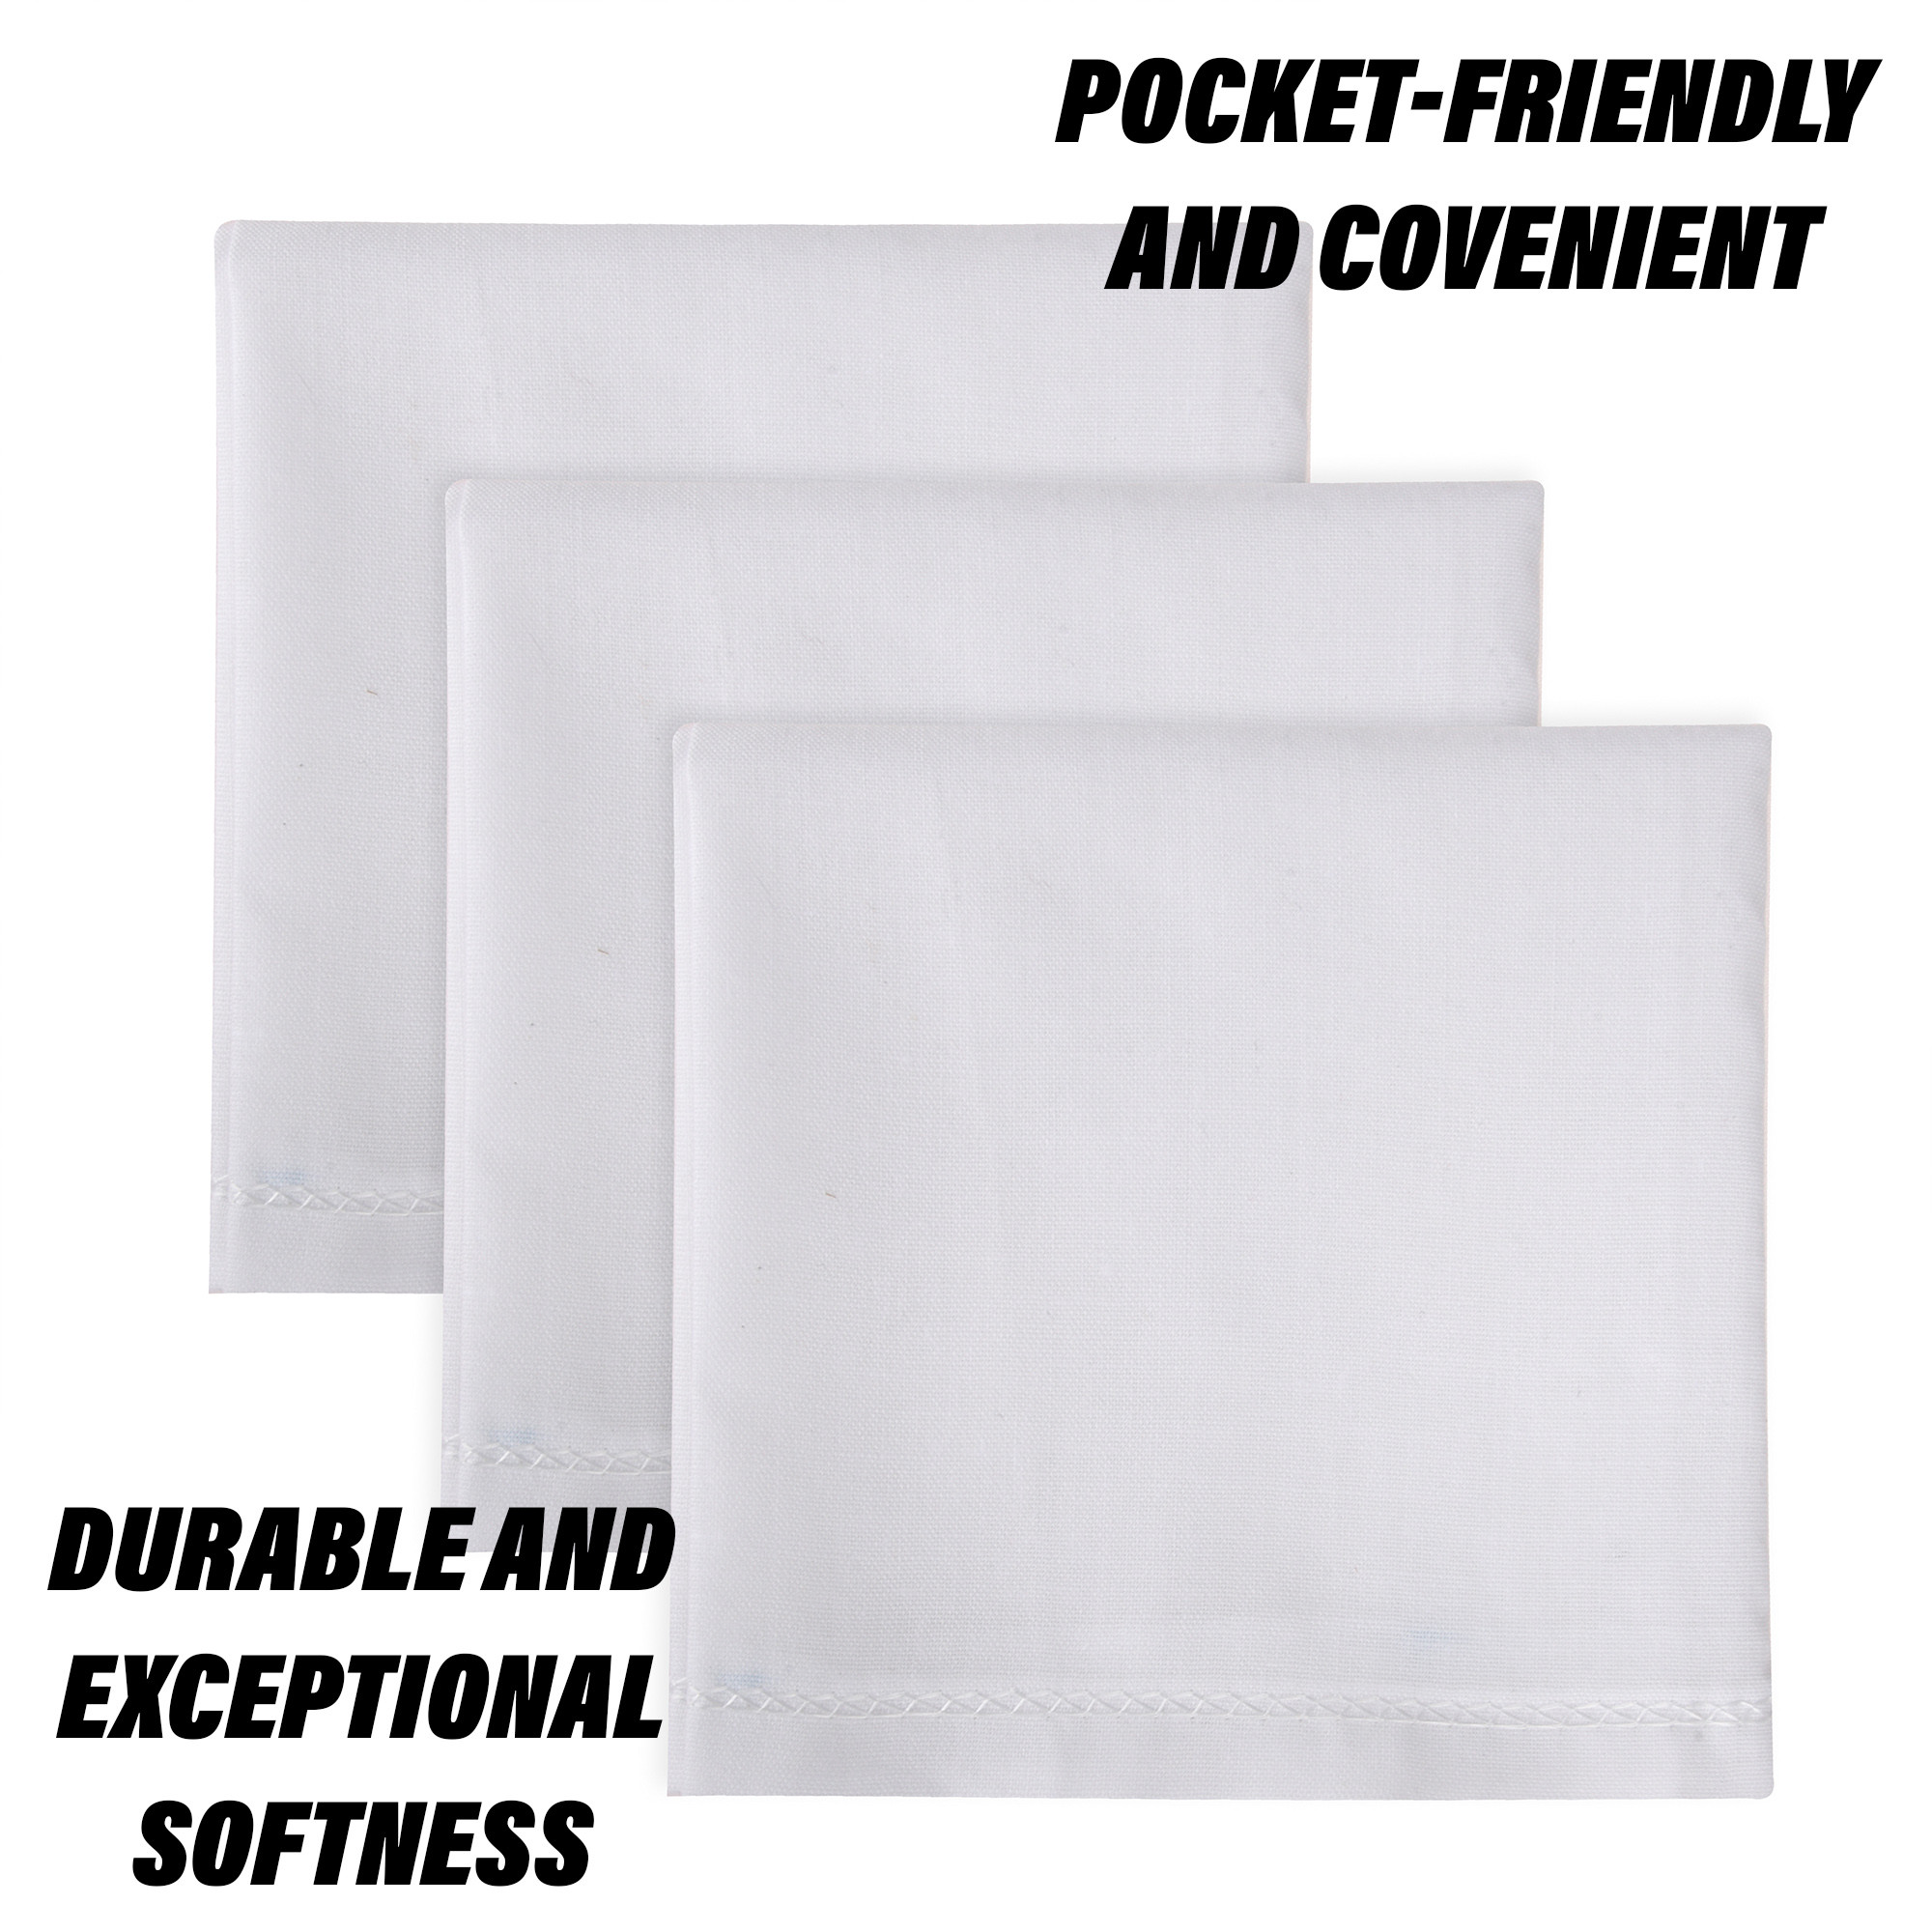 Kuber Industries Handkerchief | Premium Cotton Fabric | Handkerchief for men | Handkerchief for Boys | Men's Handkerchief Set | Plain Hanky Rumal | 4100 |White